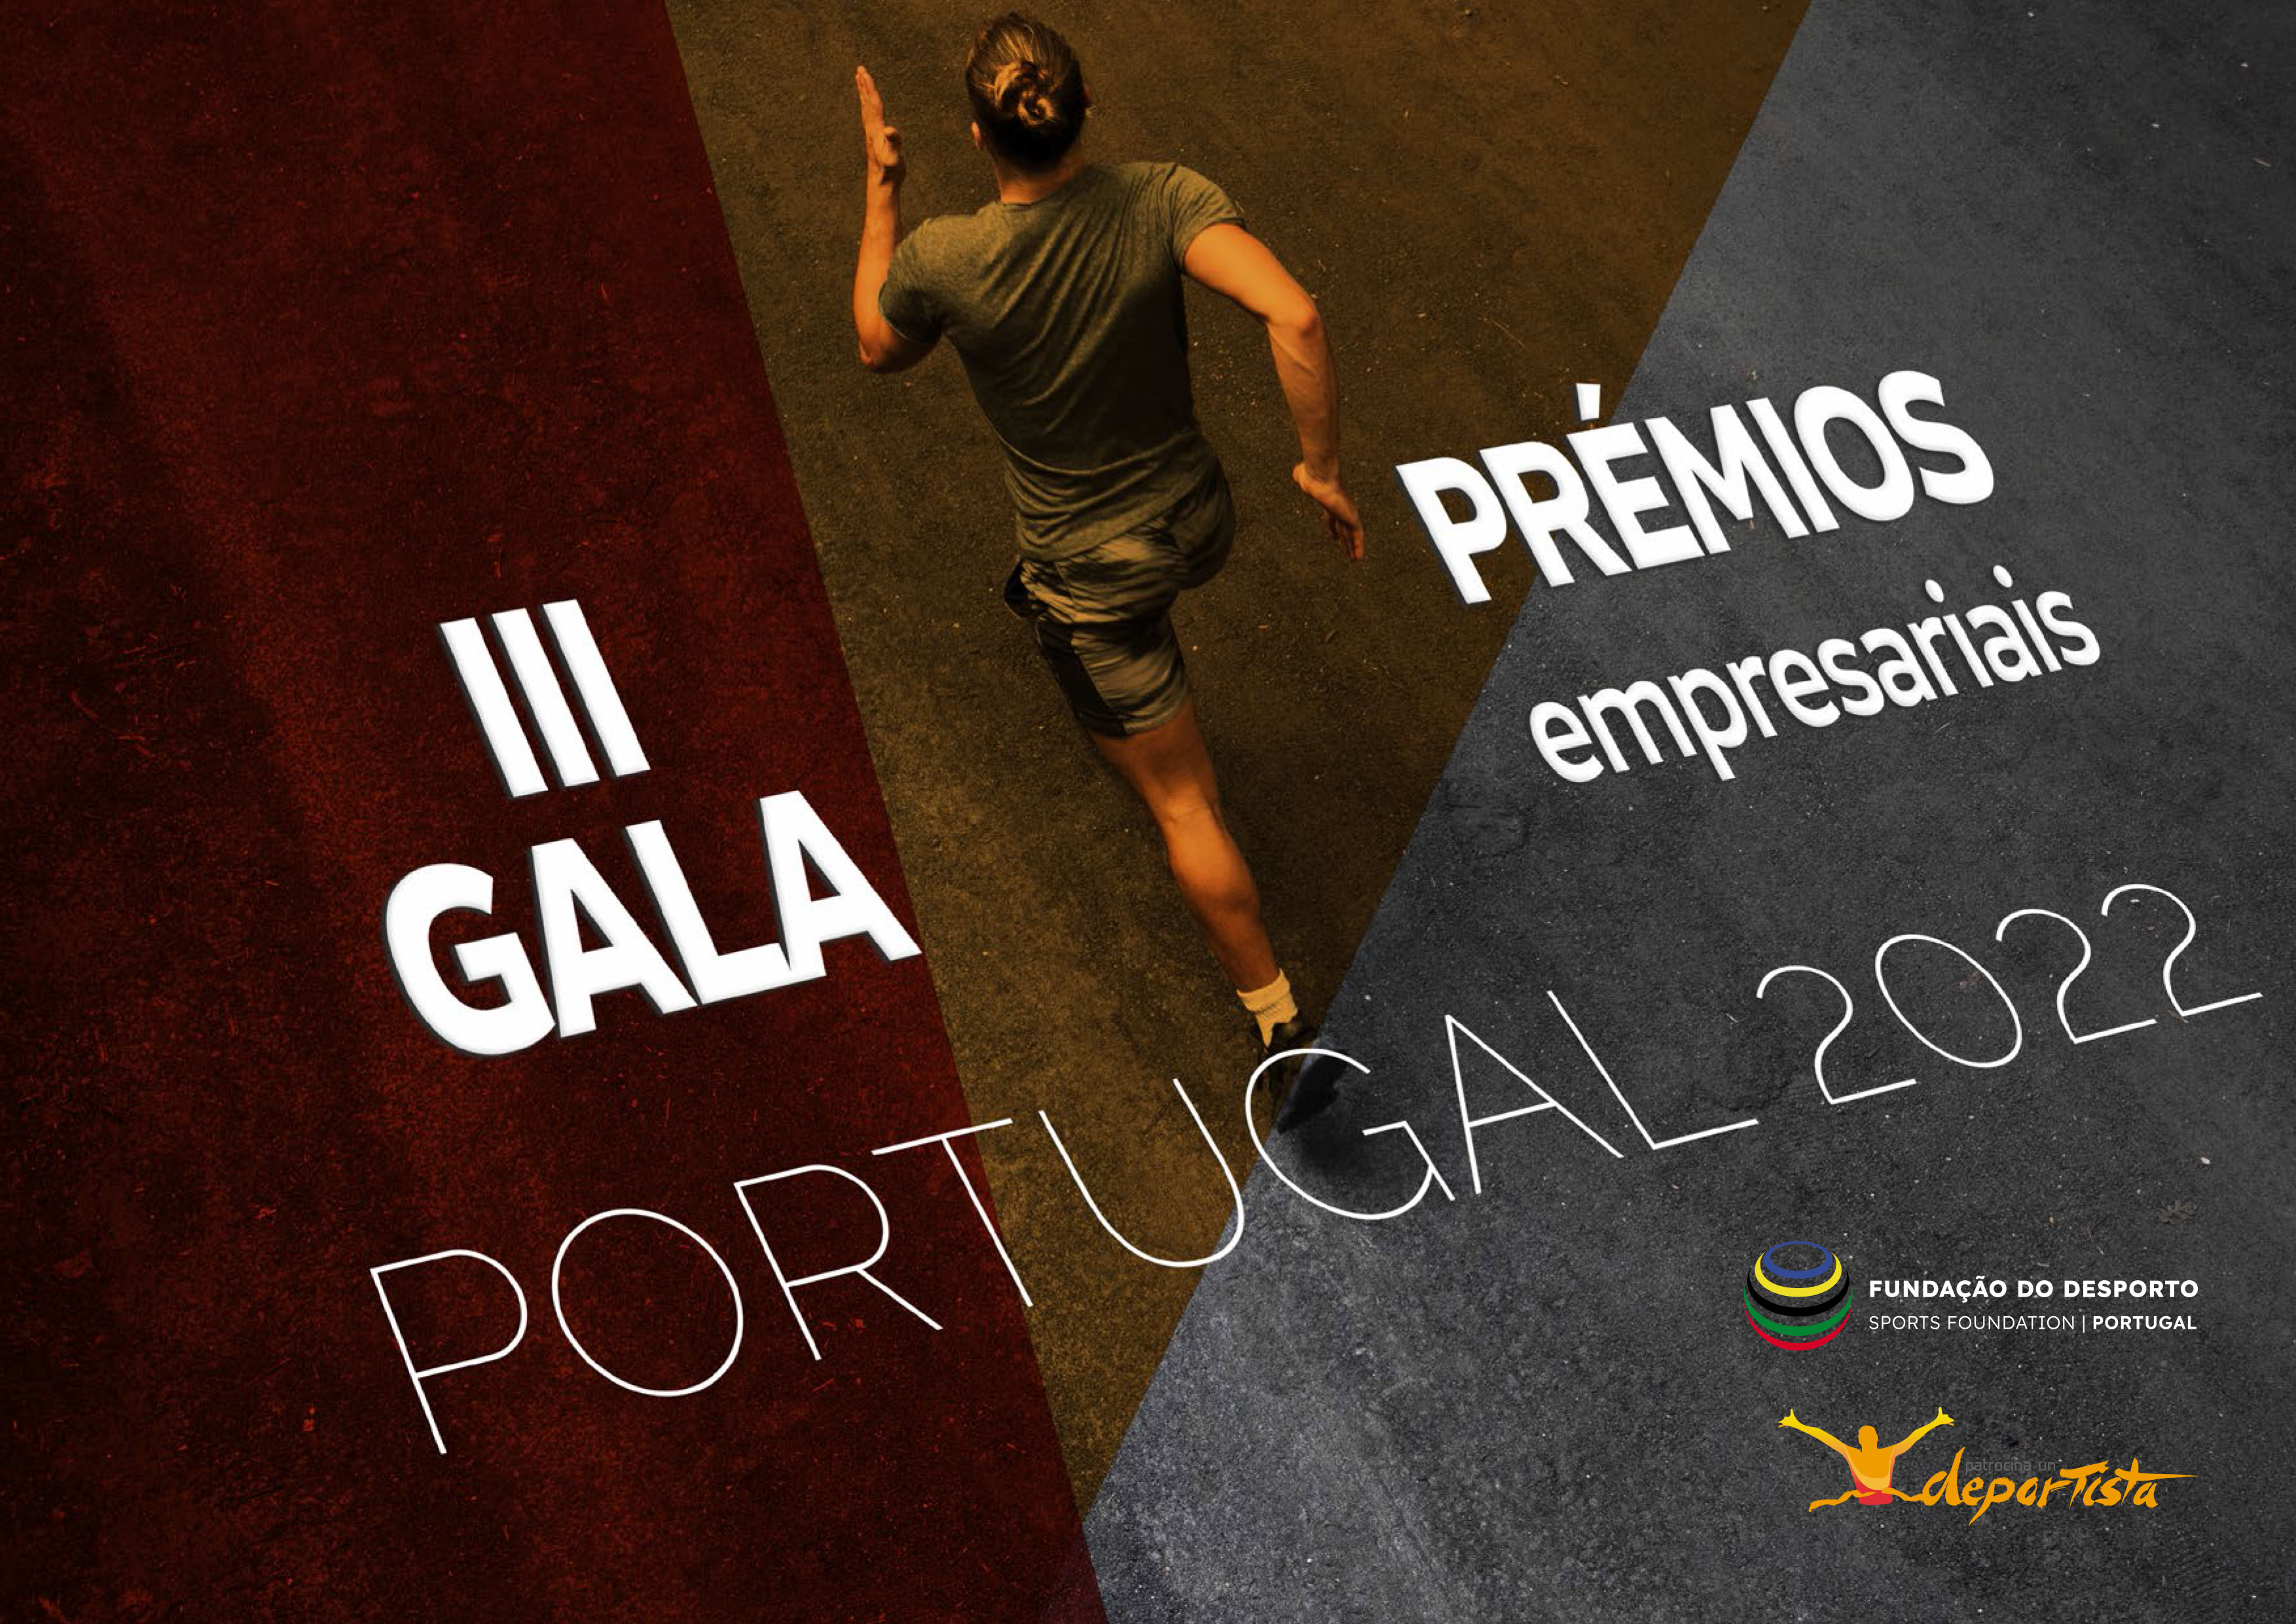 Fundação do Desporto e Patrocina un Desportista organizam III Gala de Prémios Empresariais